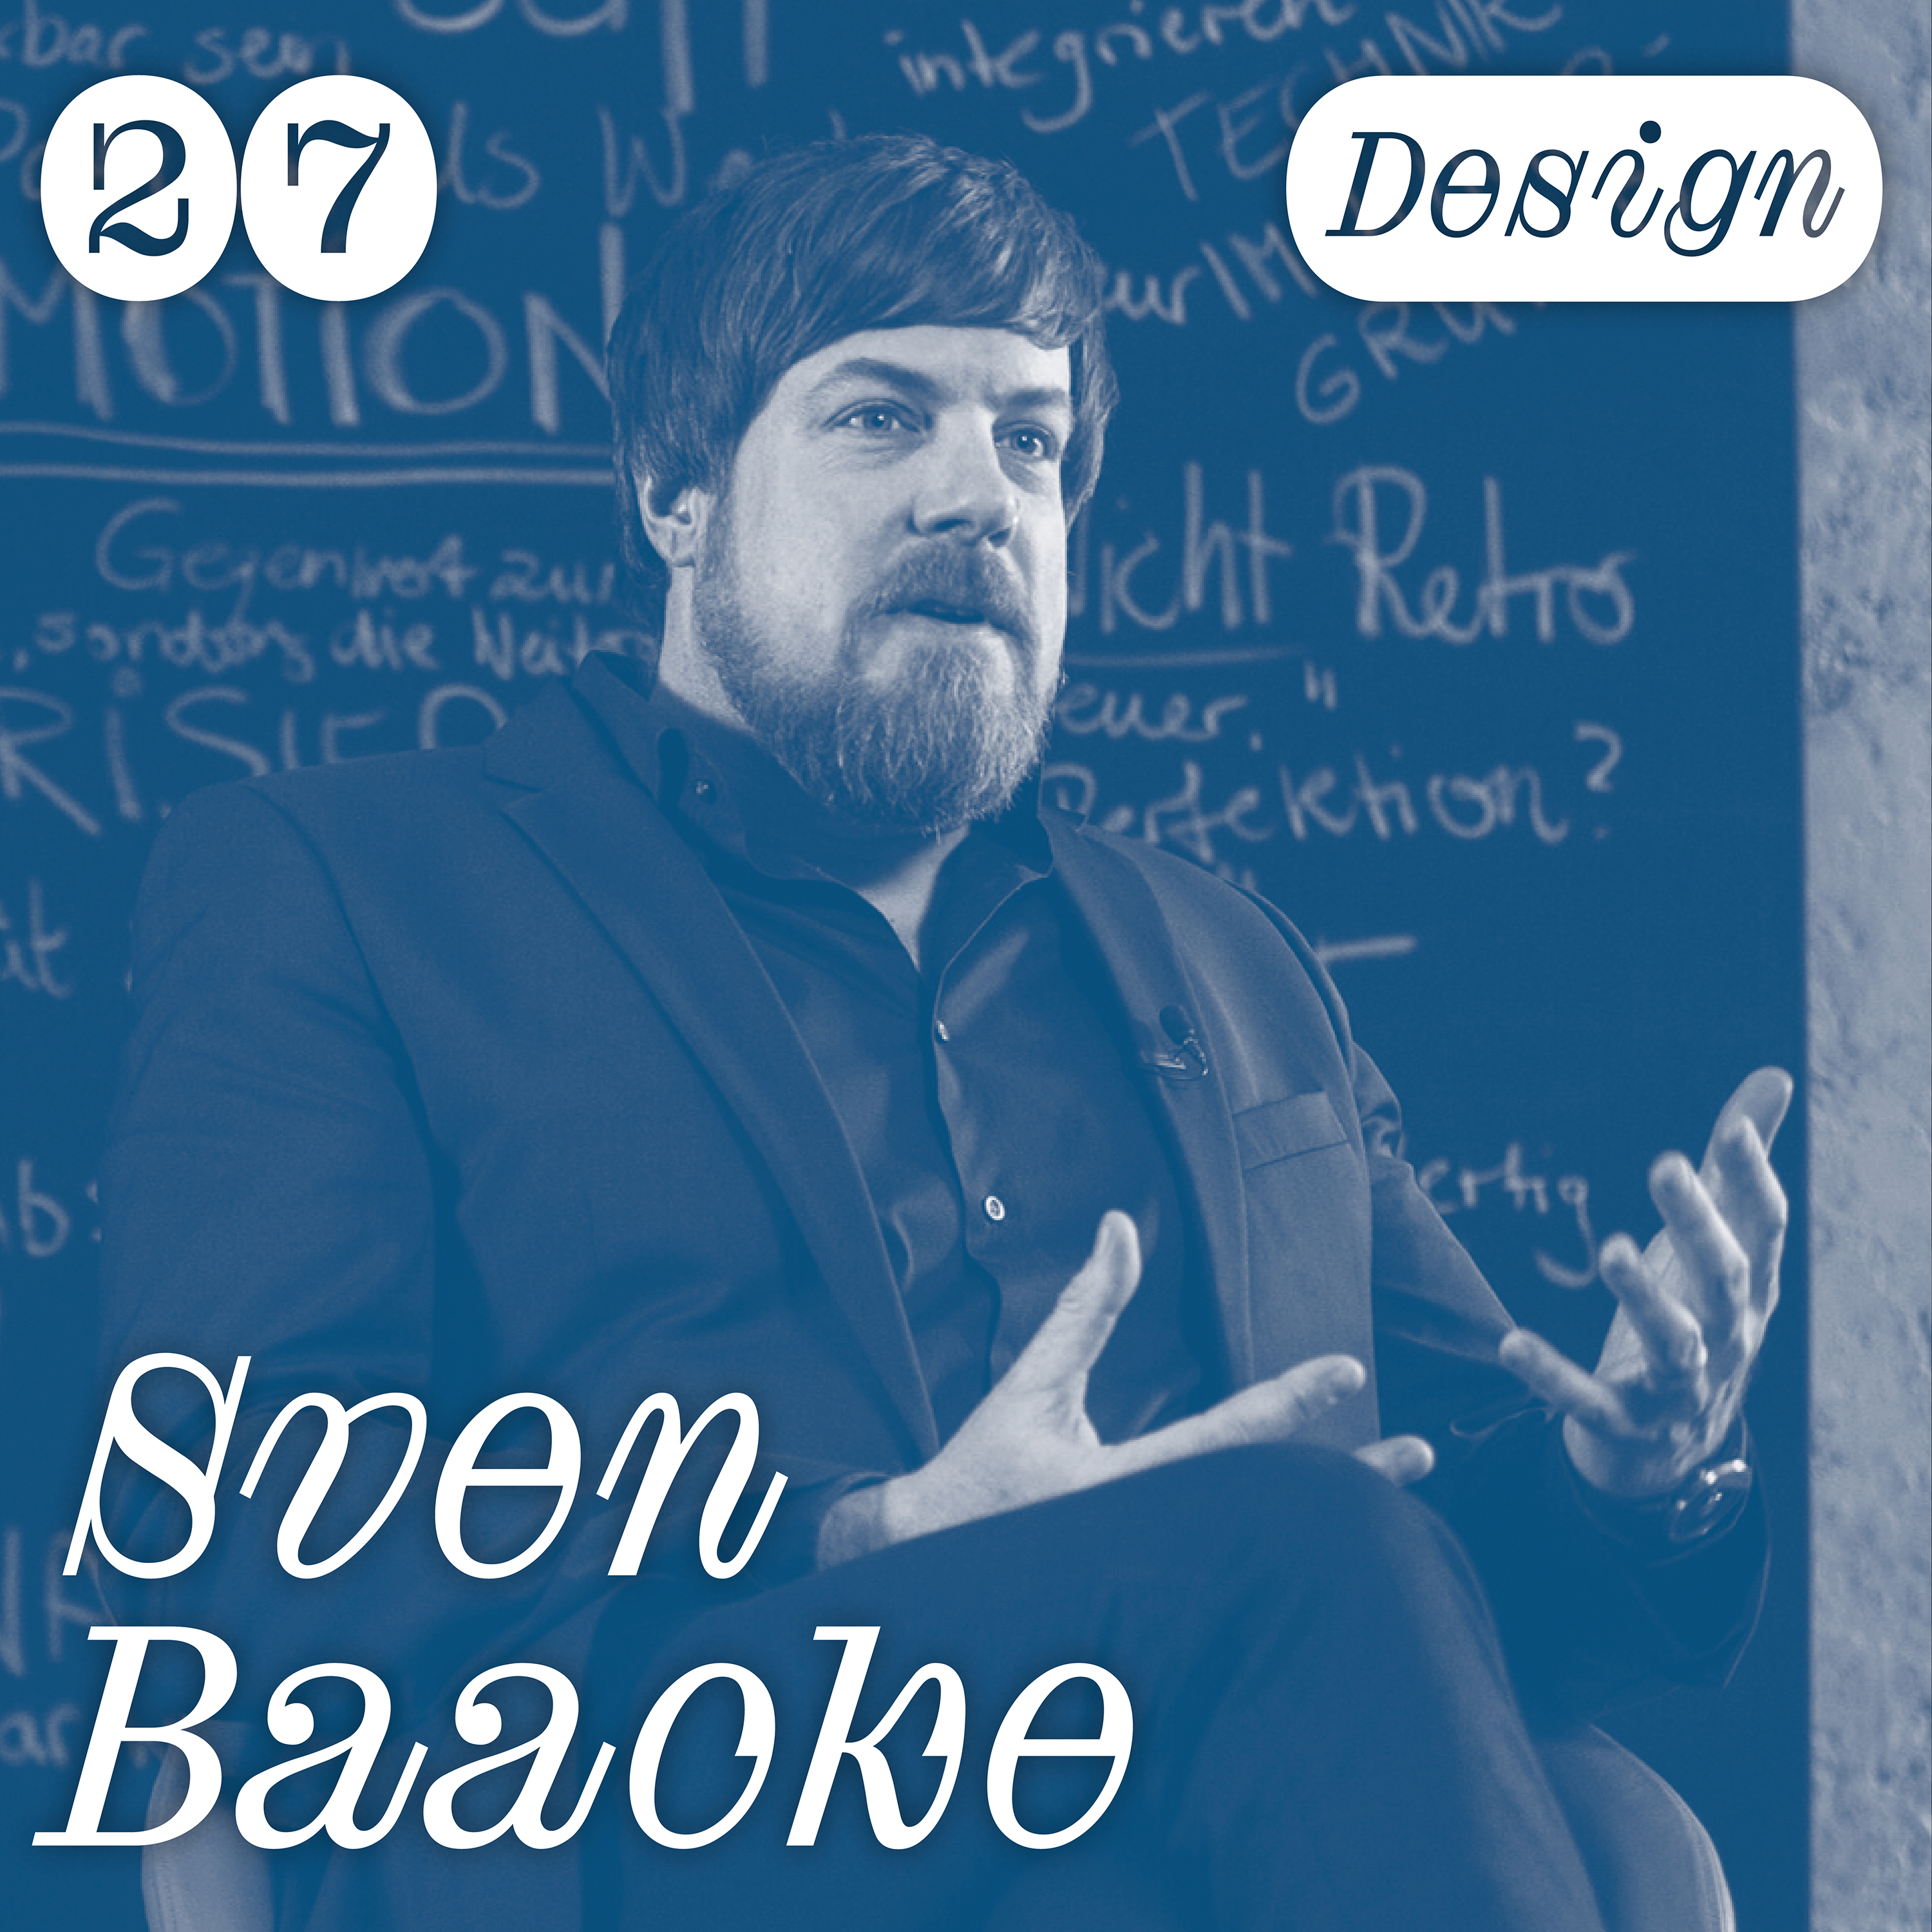 Chapter Talks – Design E27 | Sven Baacke (Chefdesigner Gaggenau)